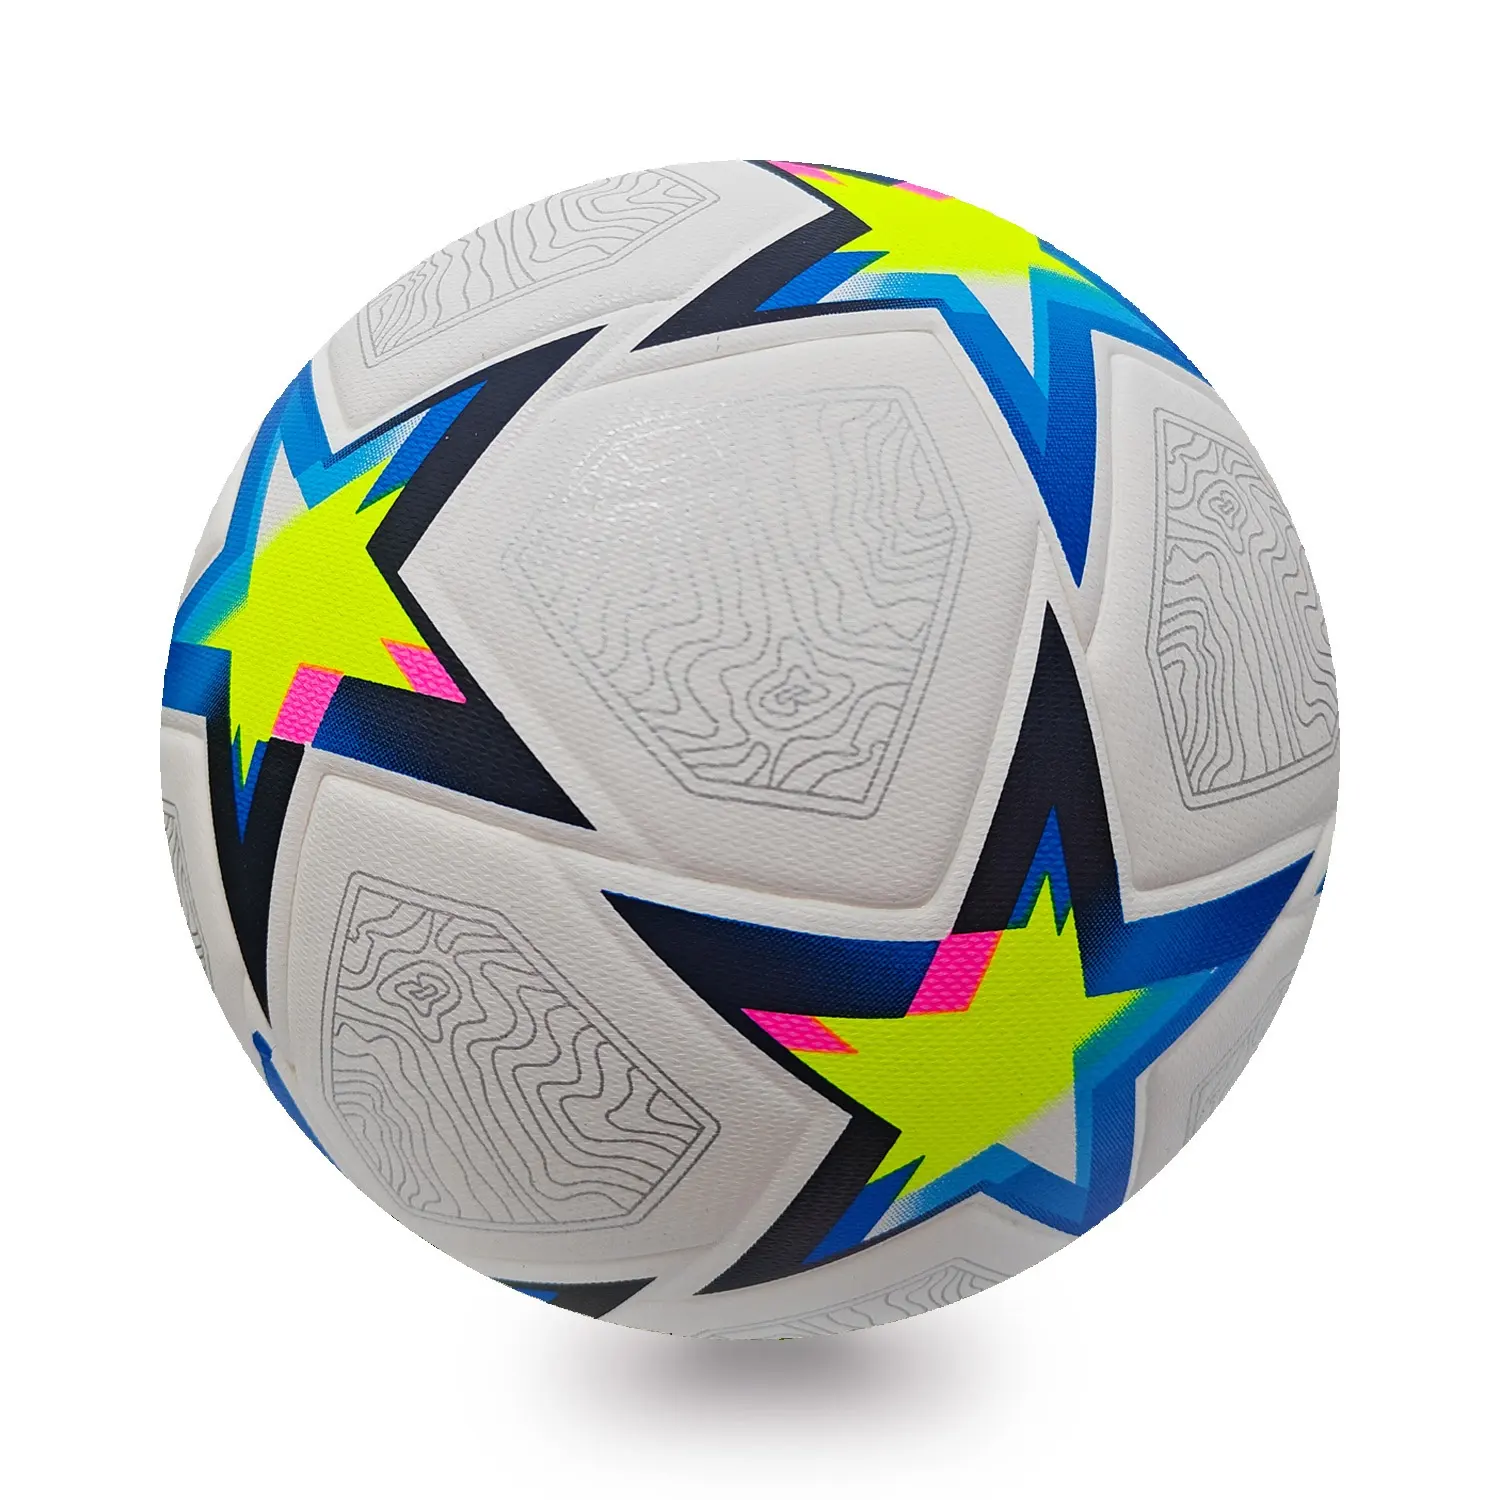 Novo design personalizado impressão de logotipo atacado bolas de futebol de alta qualidade e peso leve em cores diferentes